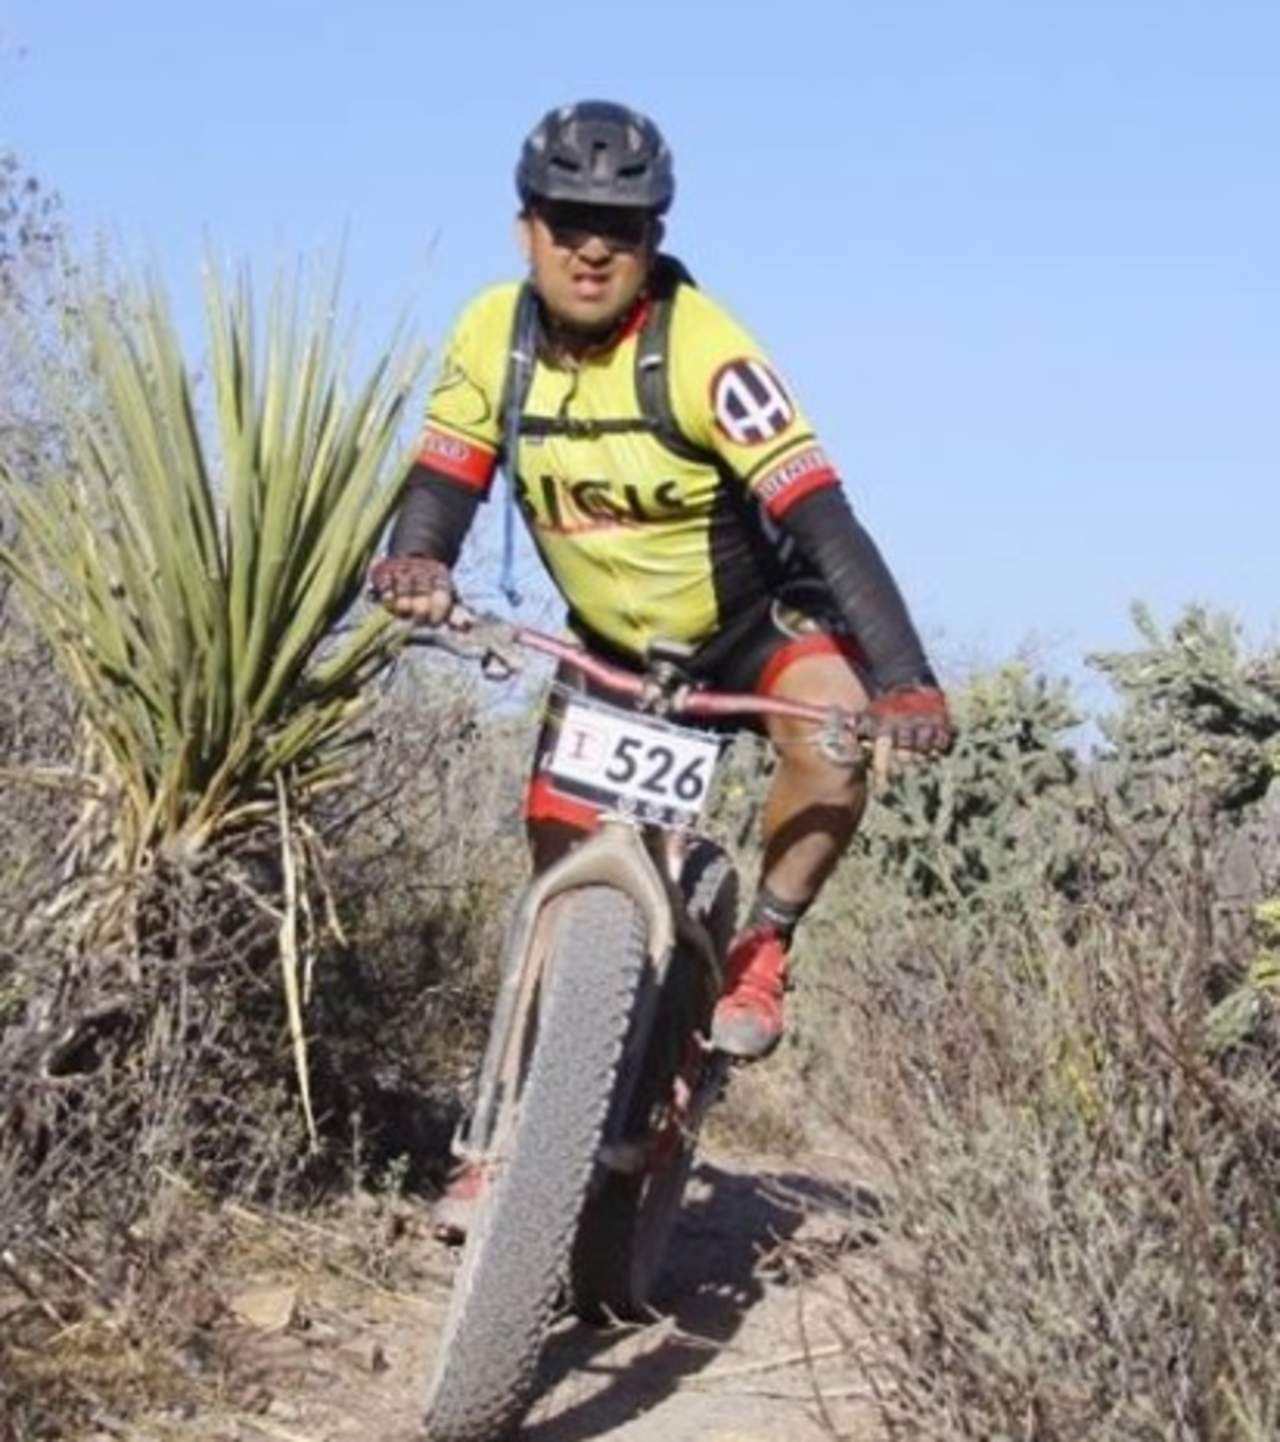 Para esta edición 2018, ya han confirmado su participación ciclistas procedentes de los estados de Chihuahua, Zacatecas, Nuevo León, Durango y Coahuila. (ARCHIVO)